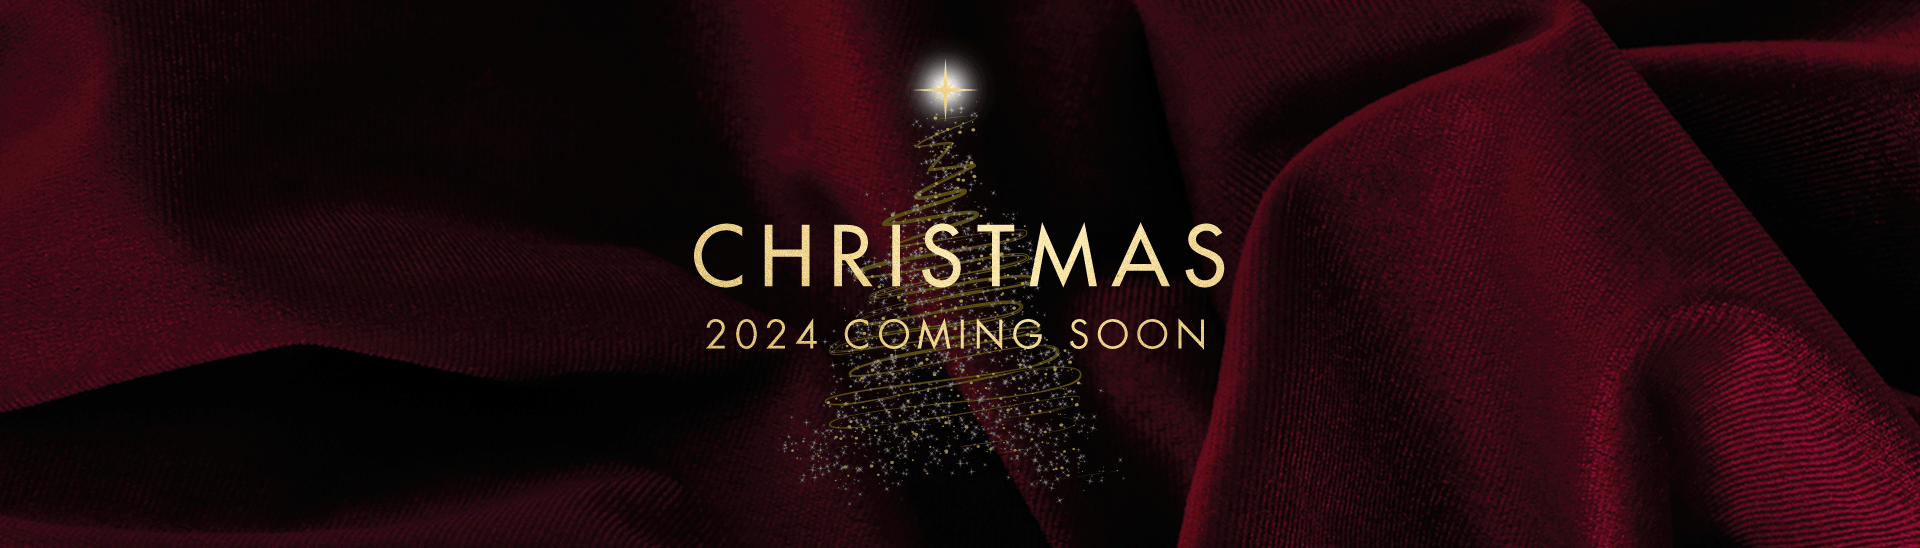 Christmas 2024 at Bath